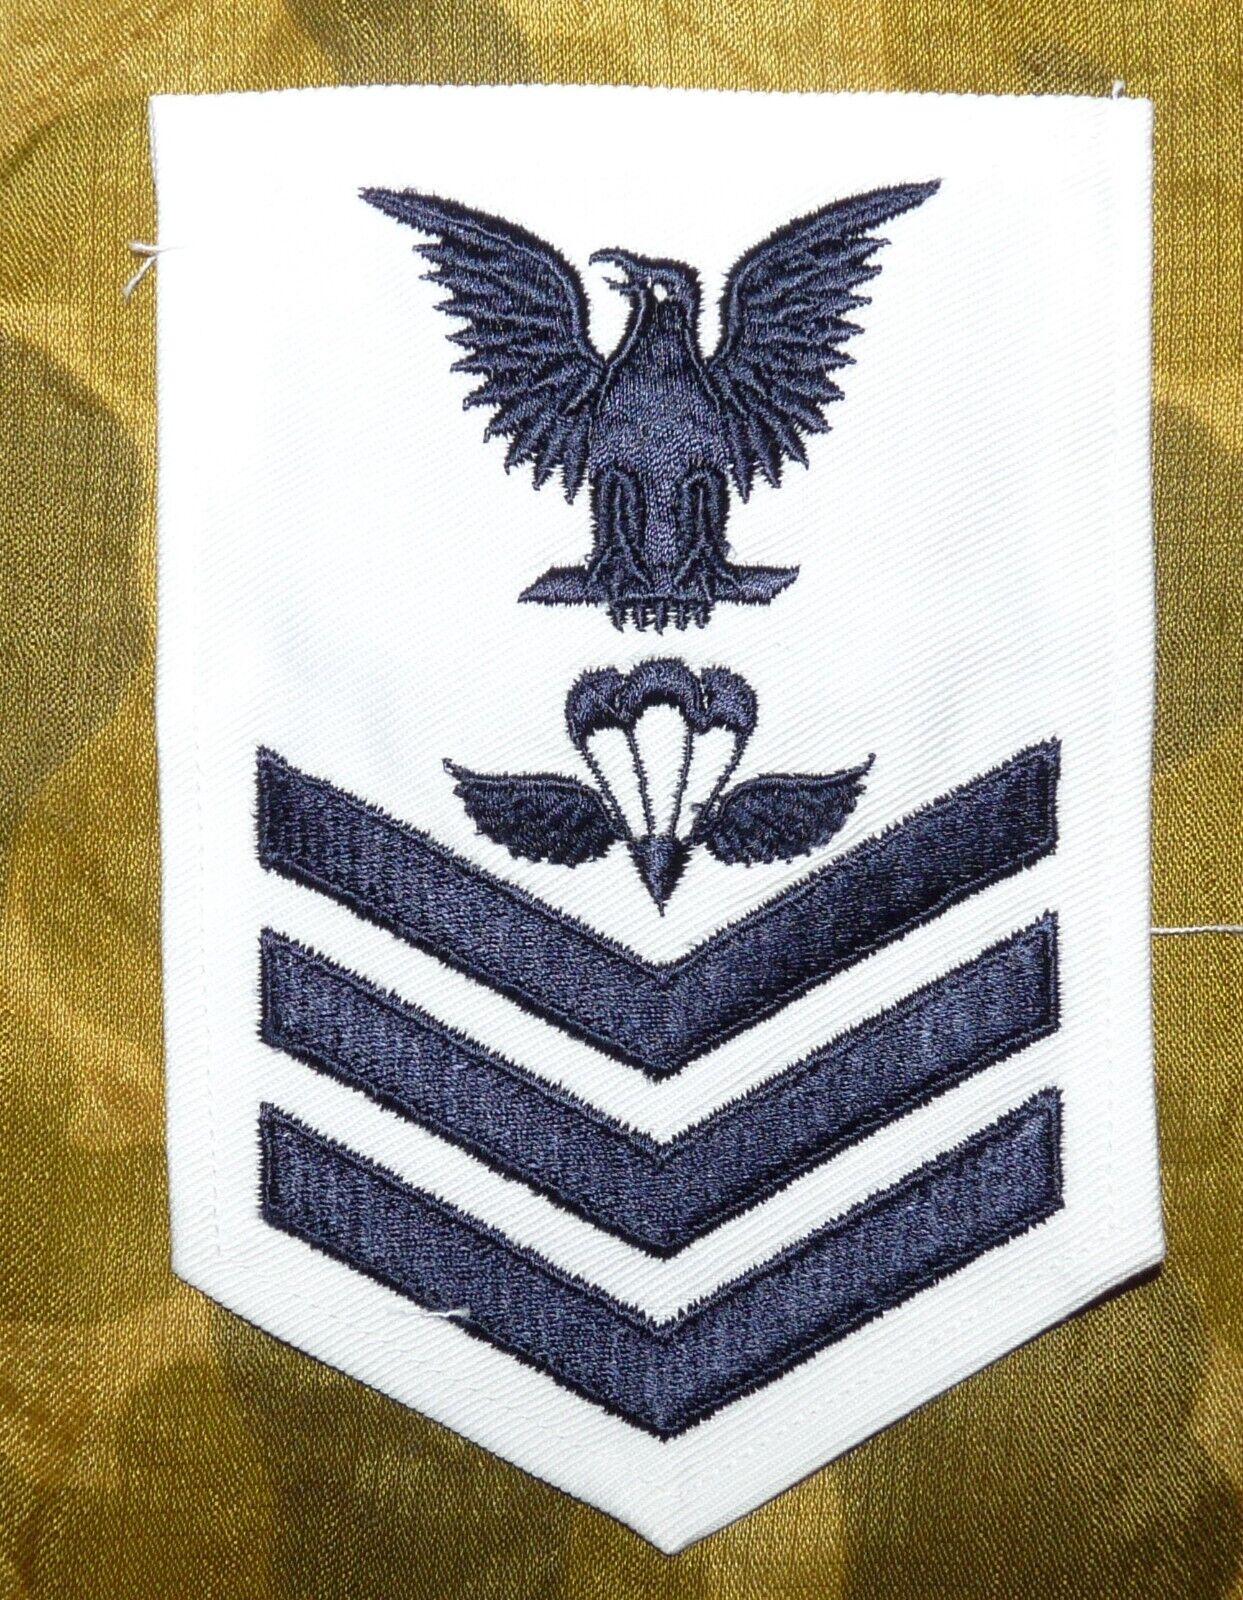 Original Vietanm War US Navy Parachute Rigger 1st Class Petty Officer Rate